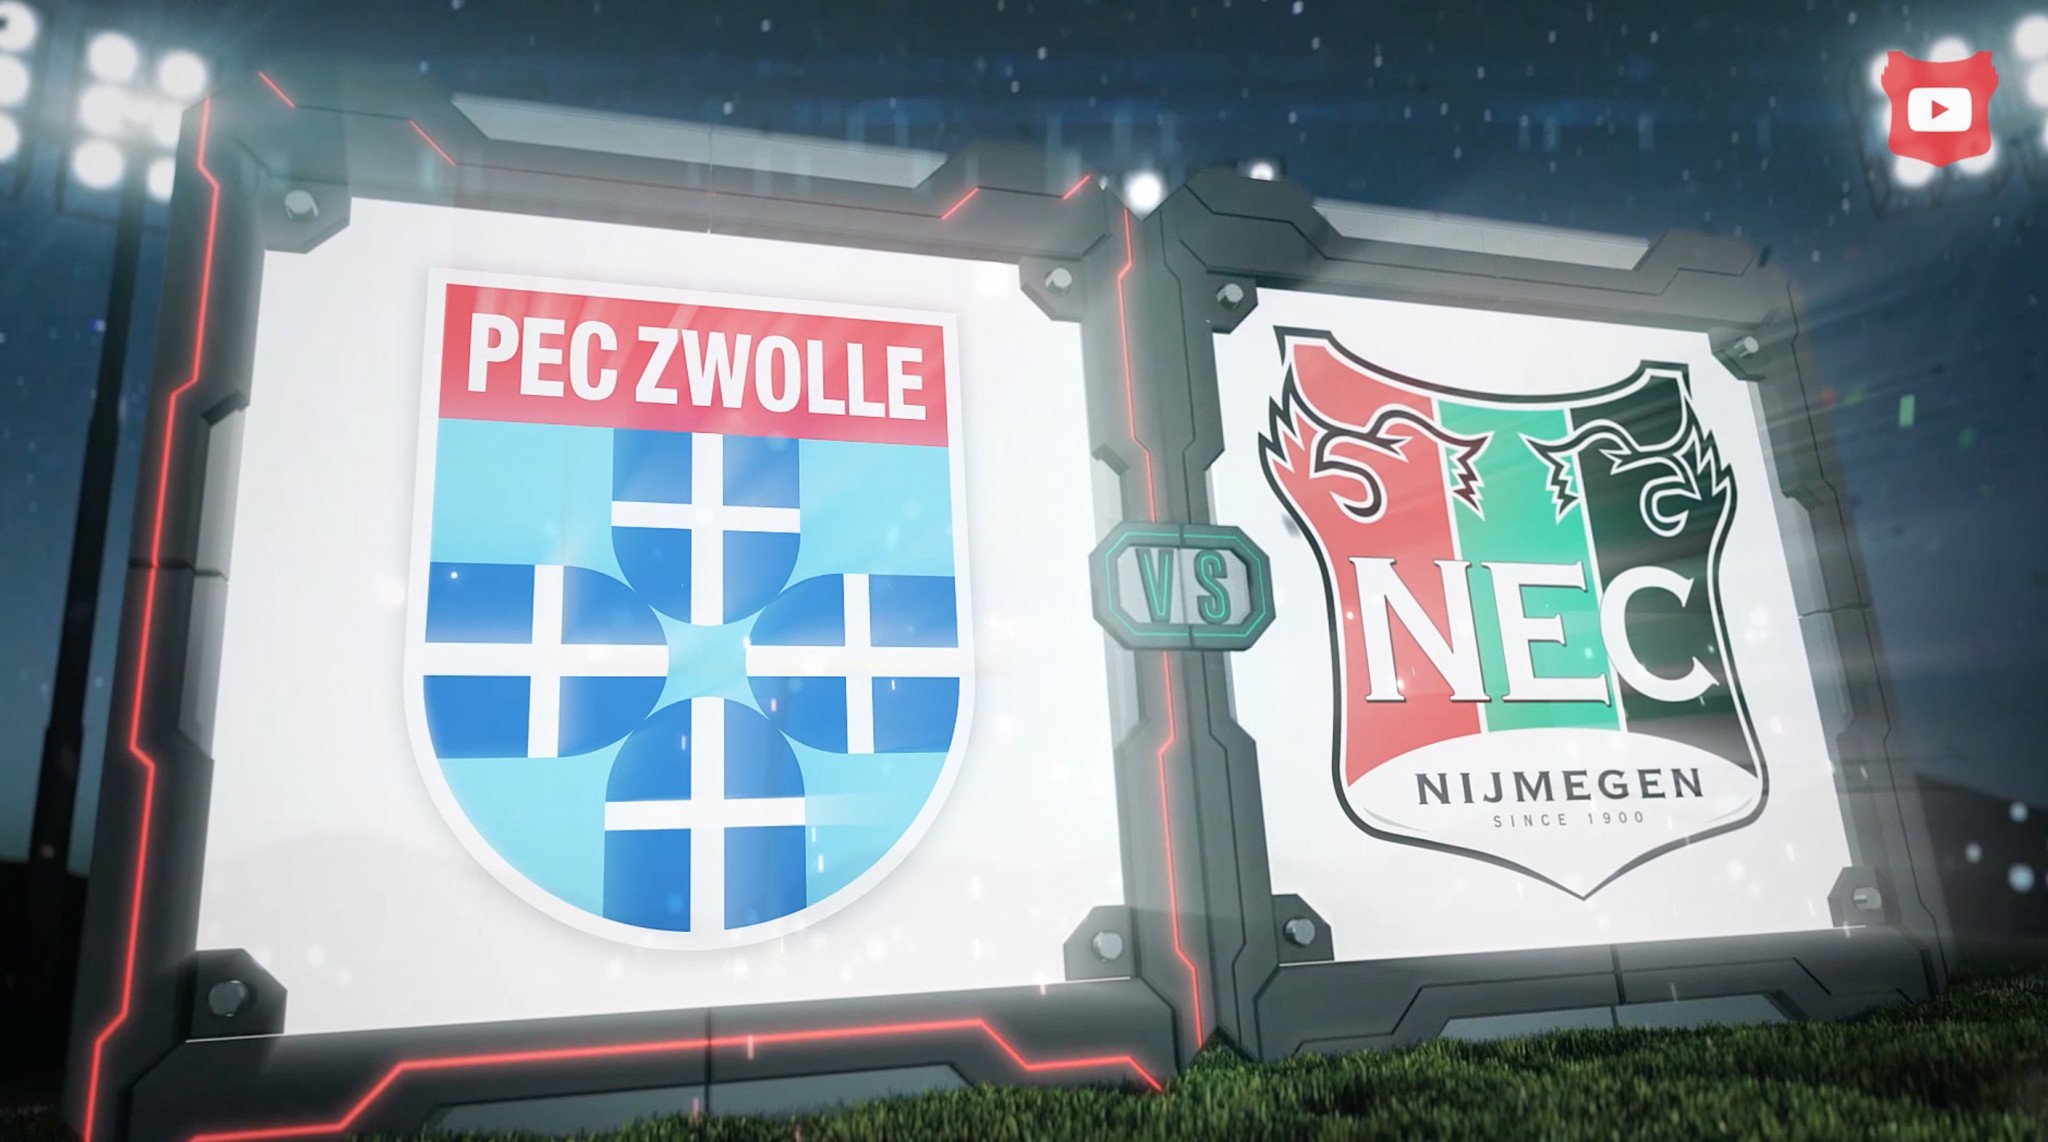 Historische doelpunten PEC Zwolle - N.E.C.